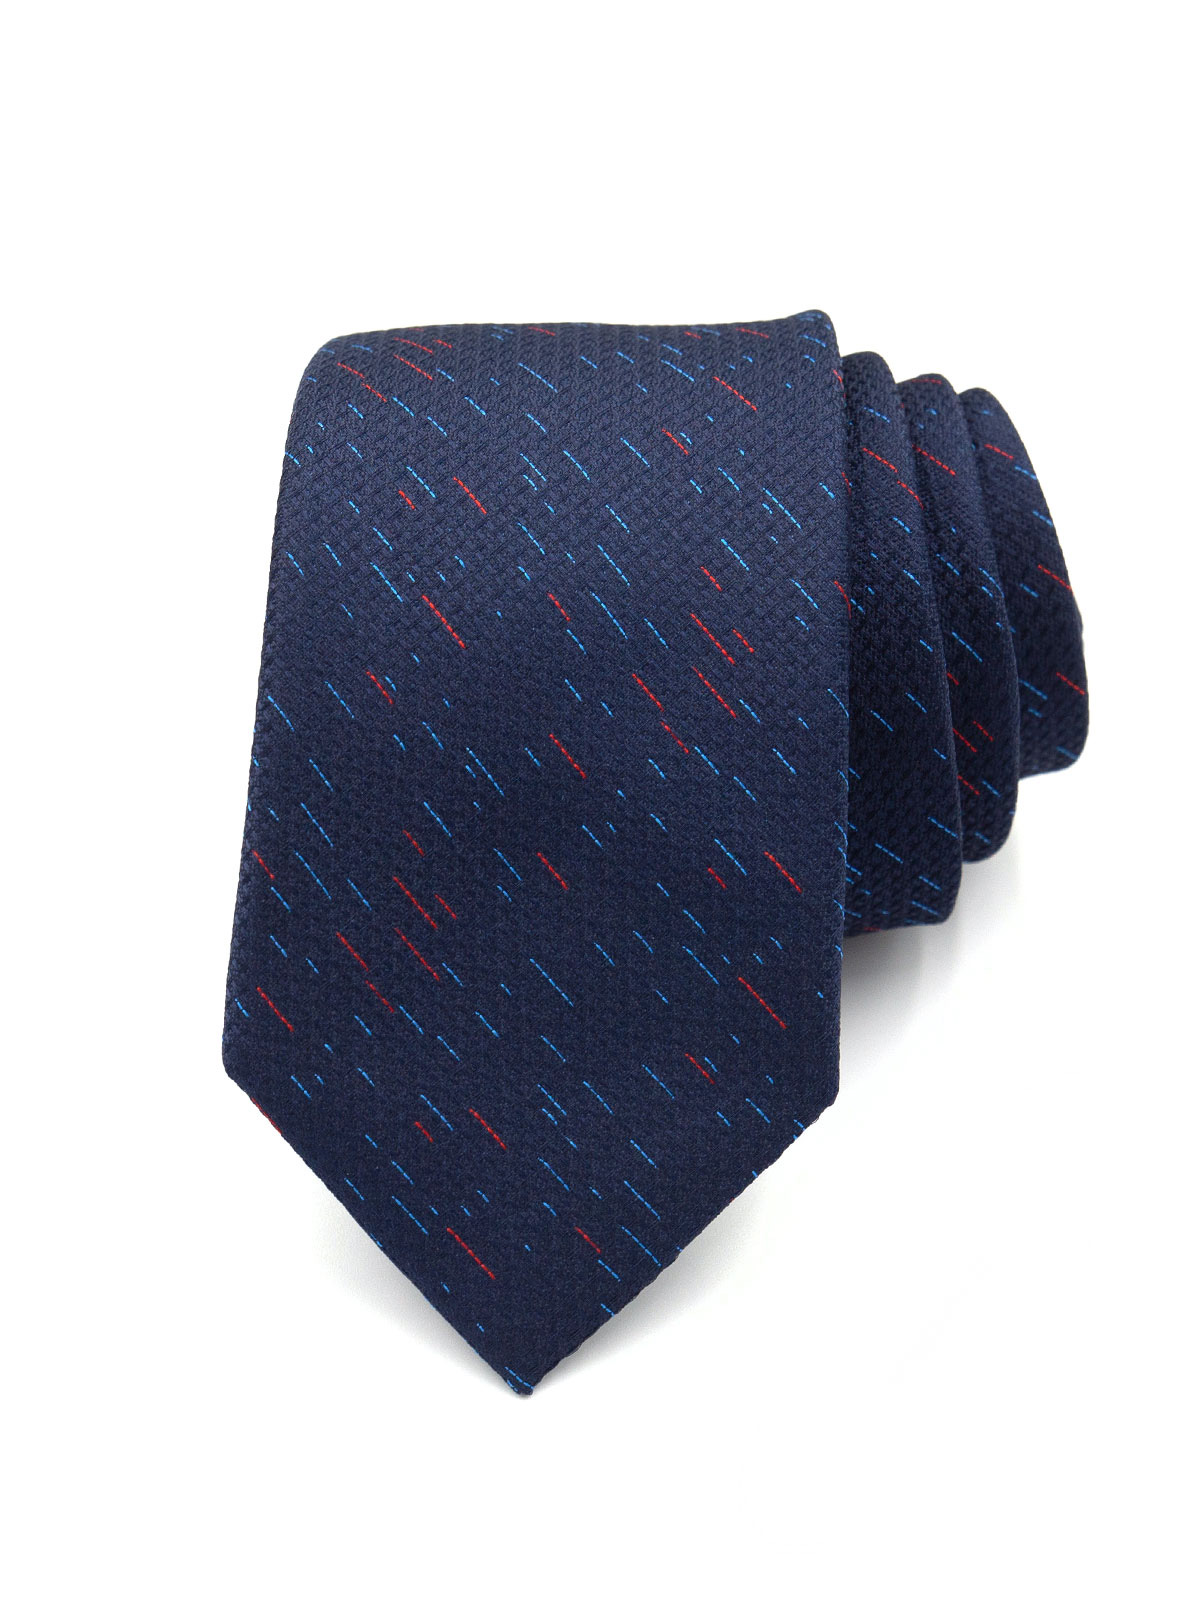 Structured blue tie - 10174 - € 14.06